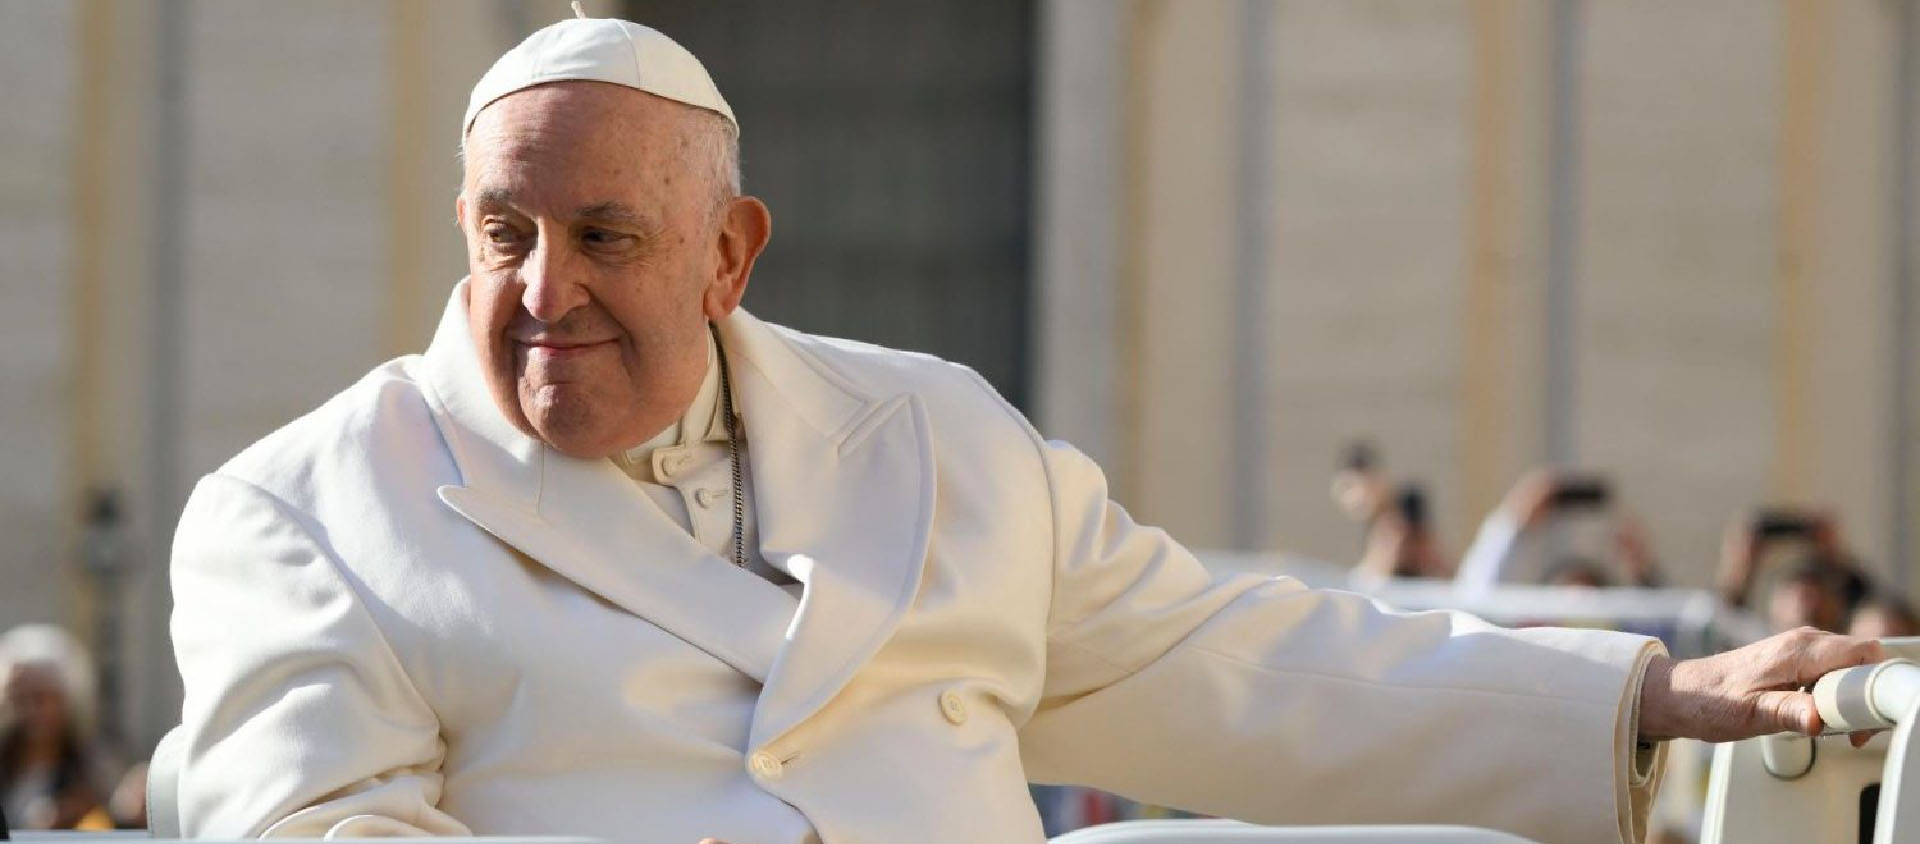 Le pape est sorti de la polyclinique Gemelli dans la matinée du 1er avril | © Vatican Media/Divisione foto